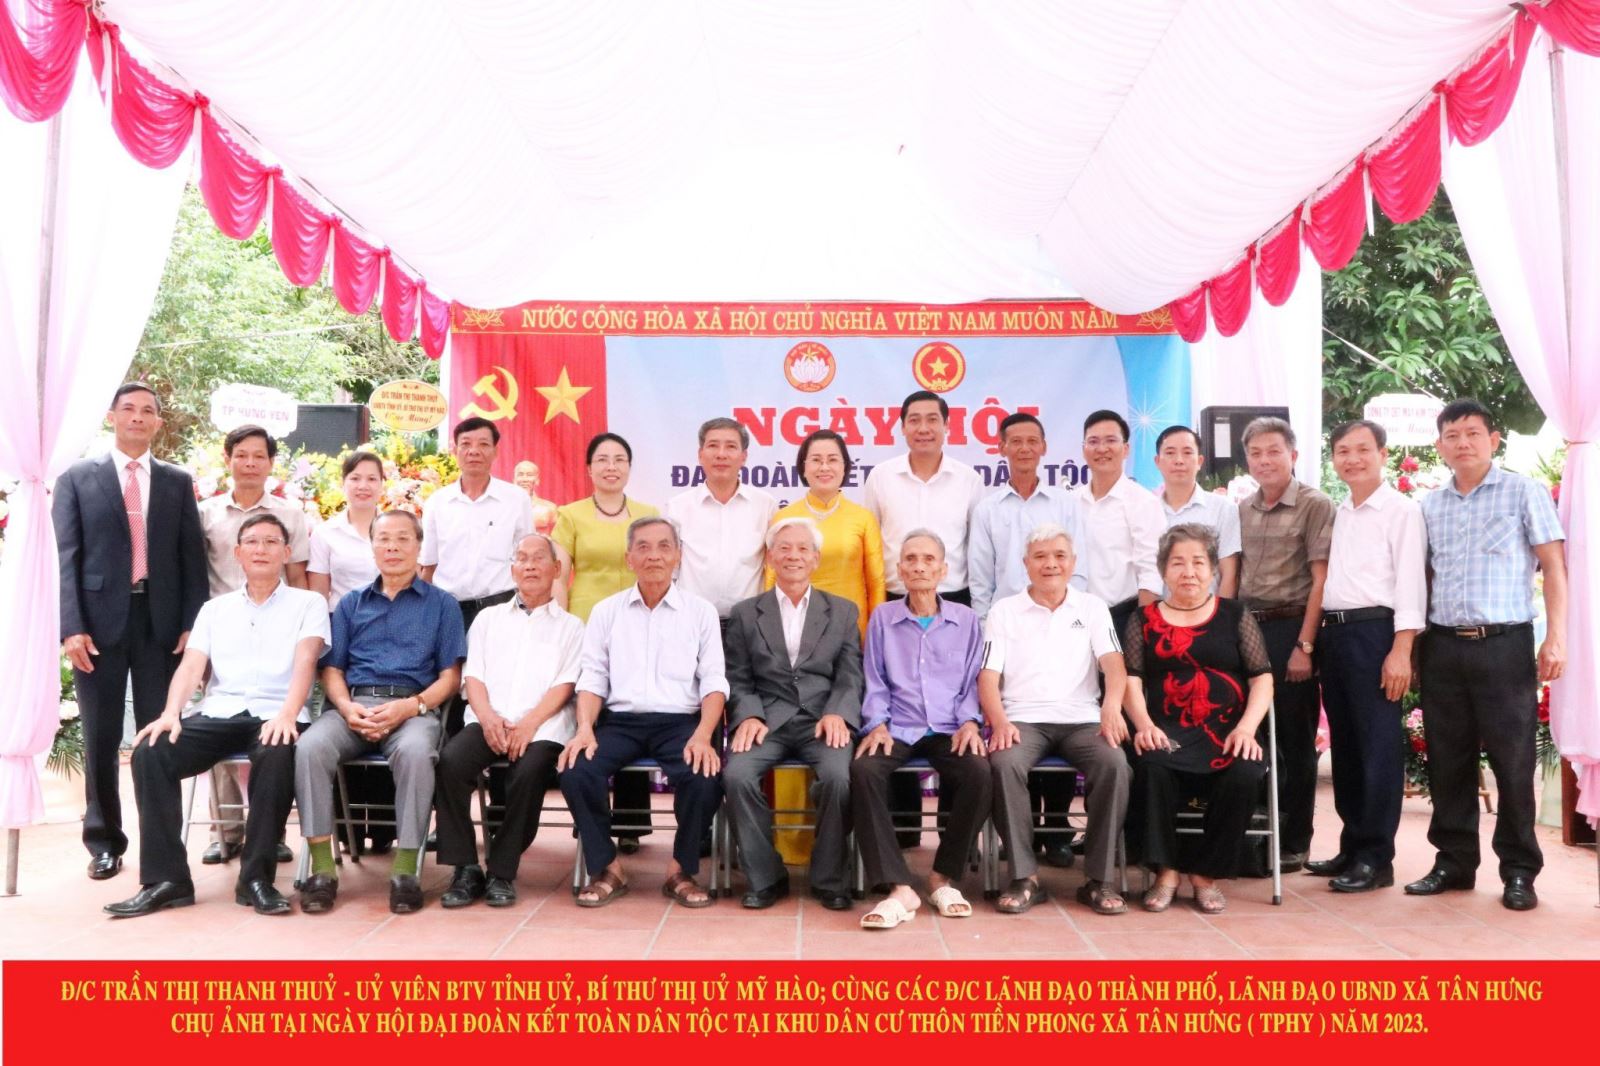 Thôn Tiền Phong, xã Tân Hưng tổ chức ngày hội Đại đoàn kết toàn dân tộc, Ngày hội văn hóa quân dân năm 2023